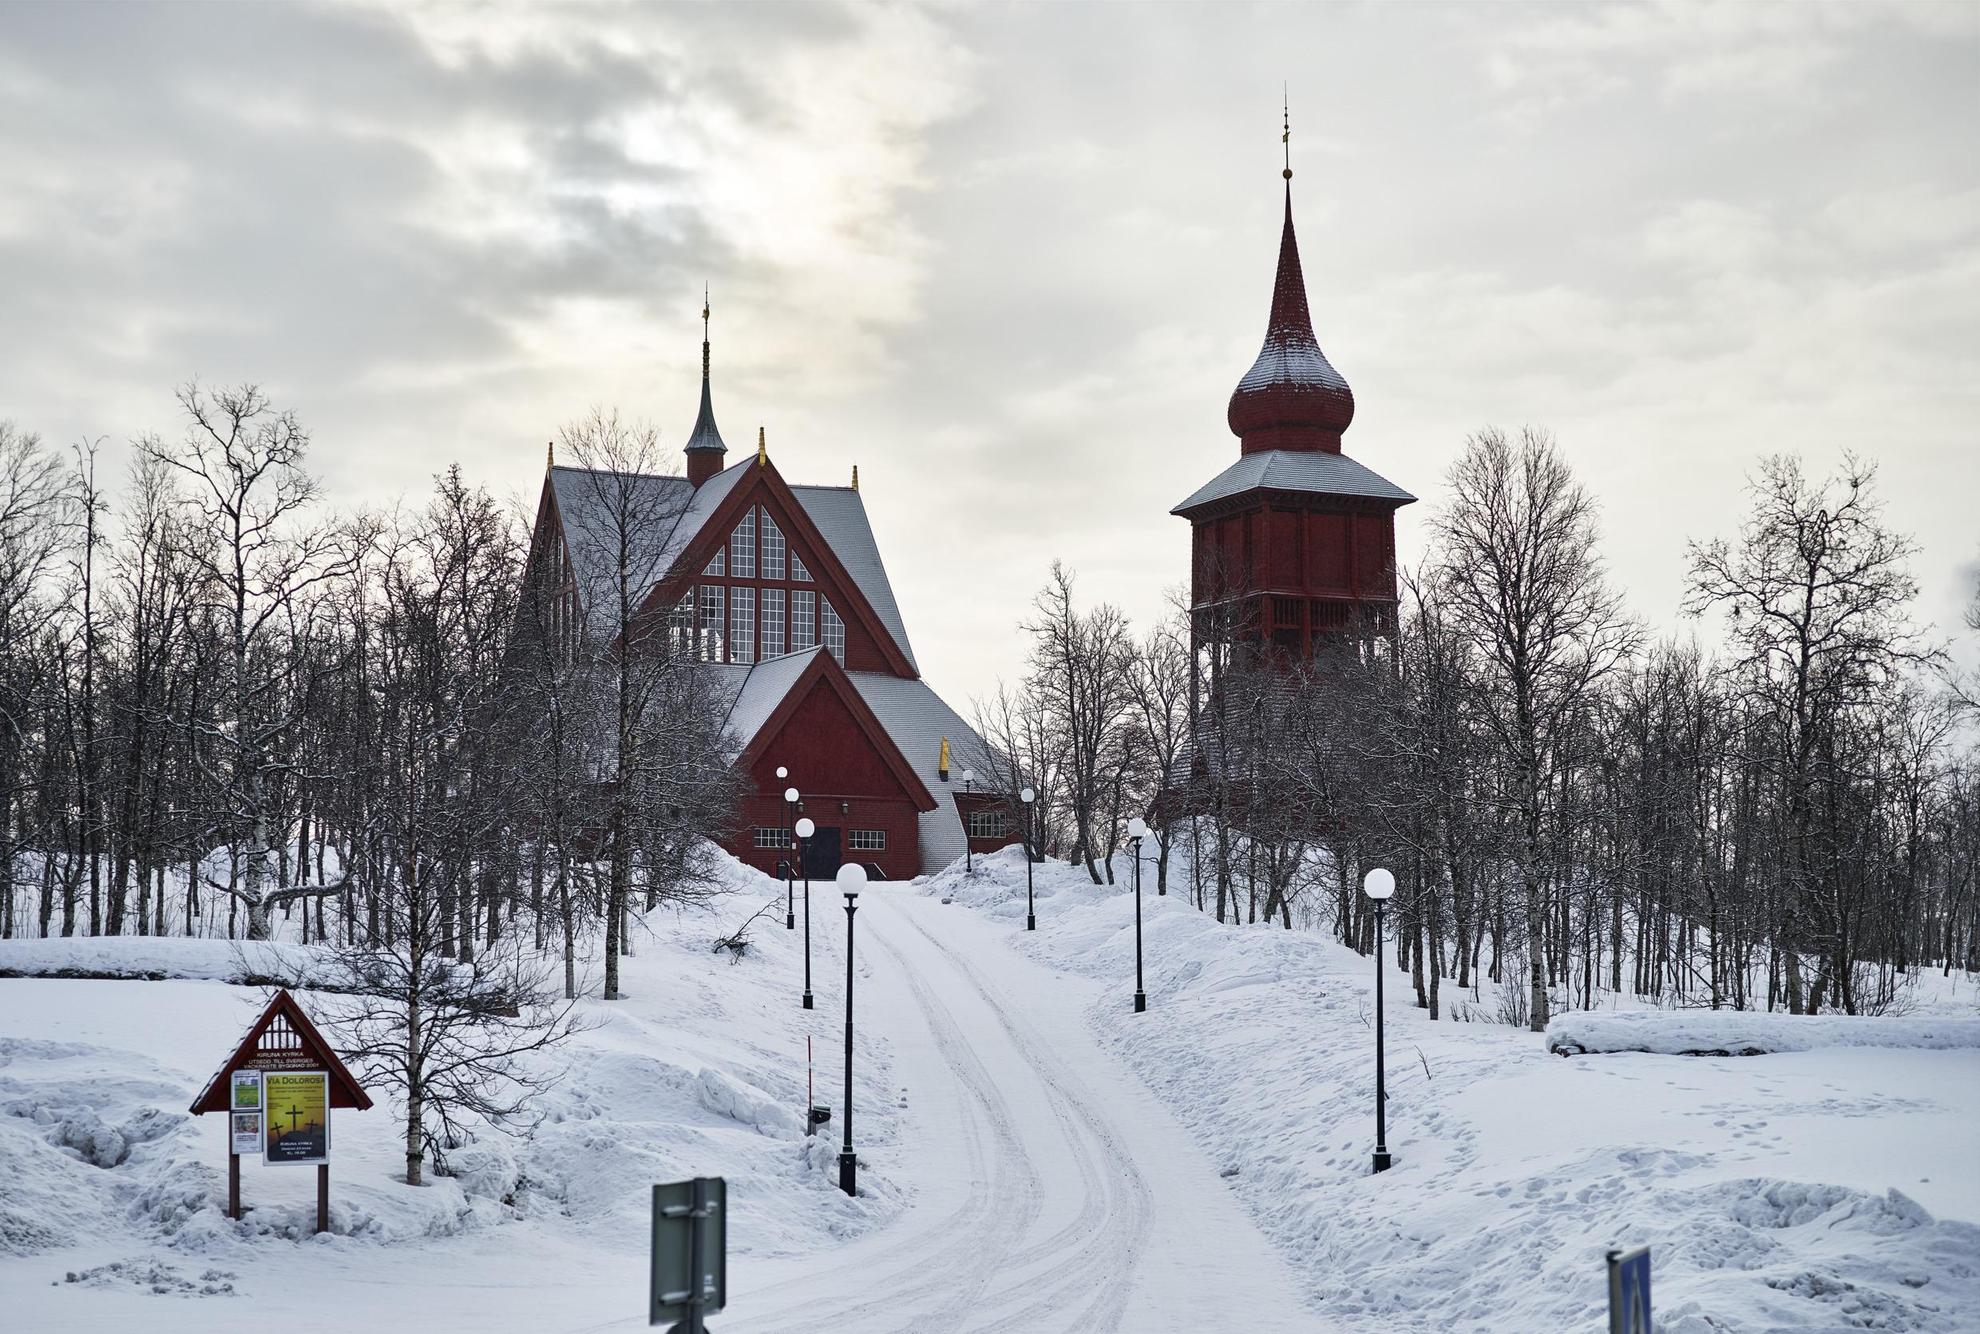 L'église de Kiruna, composé d'un bâtiment en bois avec un clocher situé à côté, se trouve sur une pente enneigée.